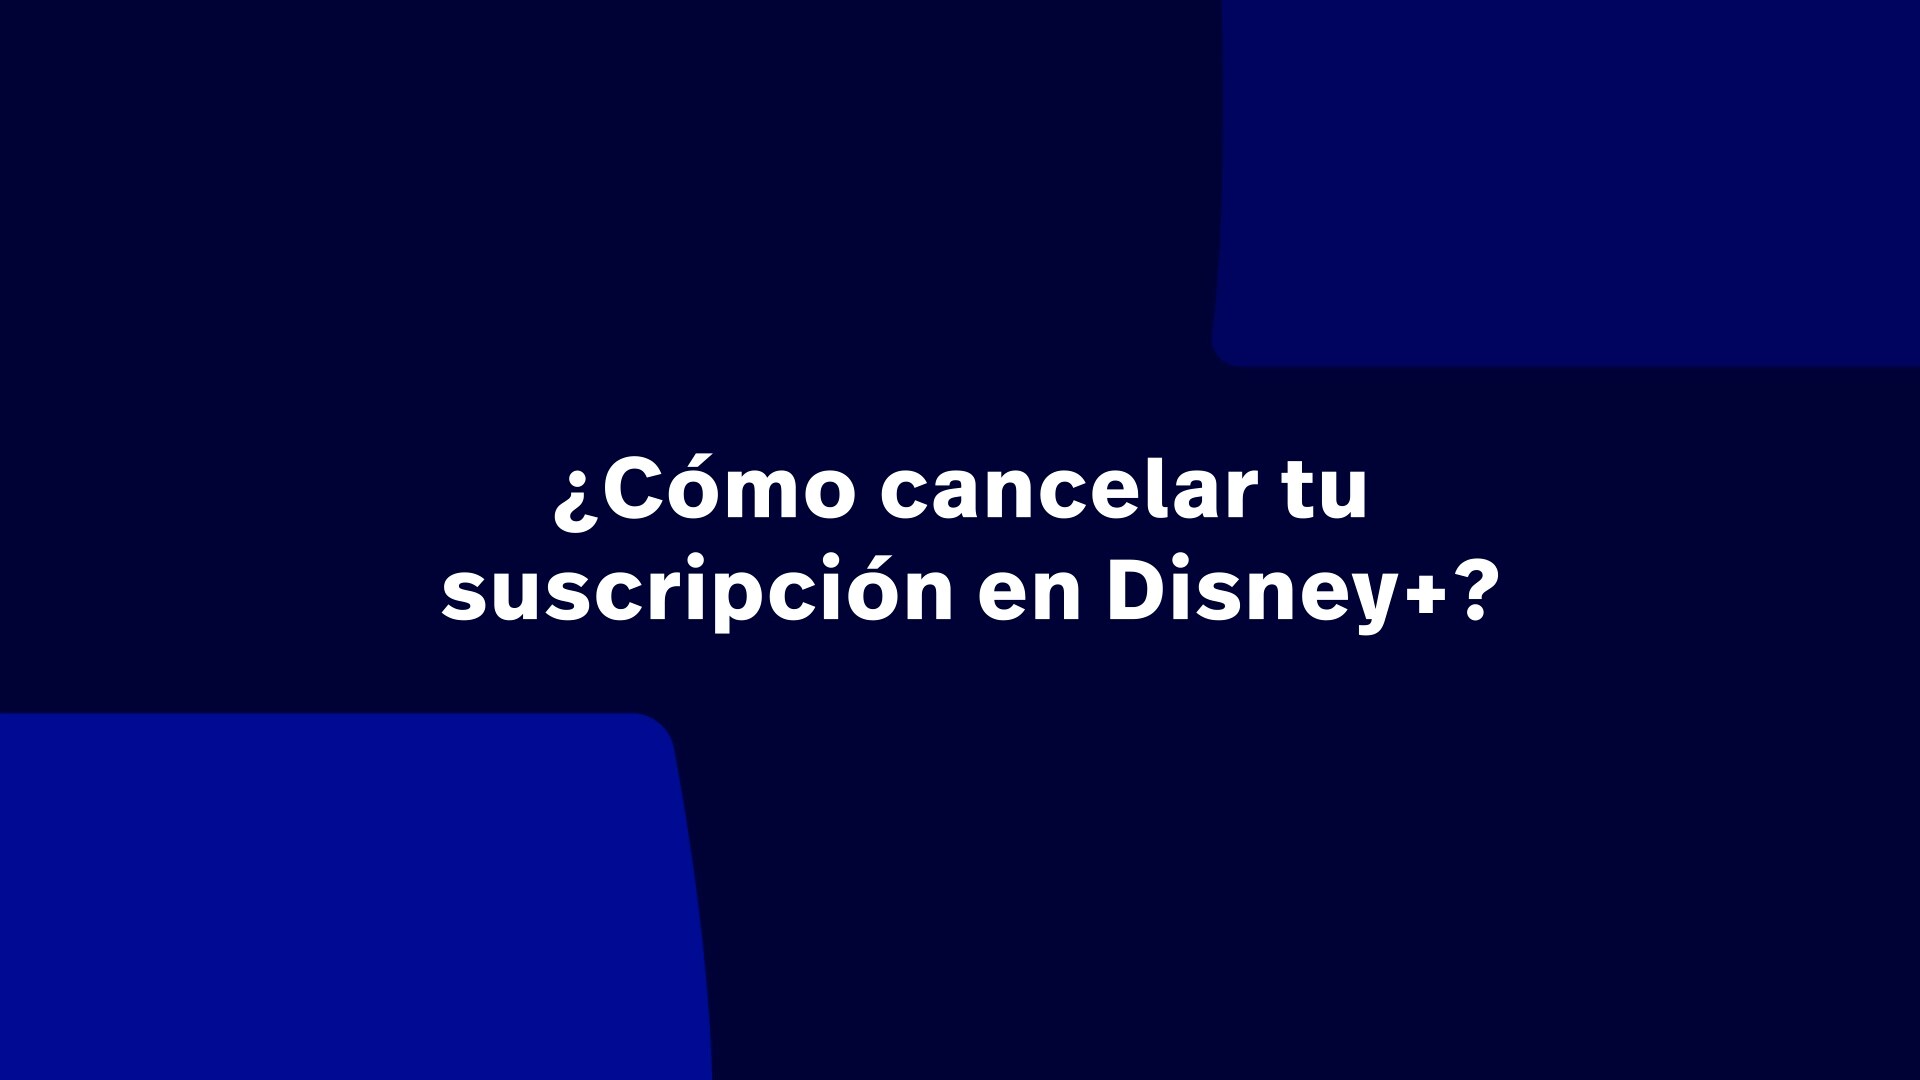 ¿Cómo cancelar tu suscripción a Disney+?